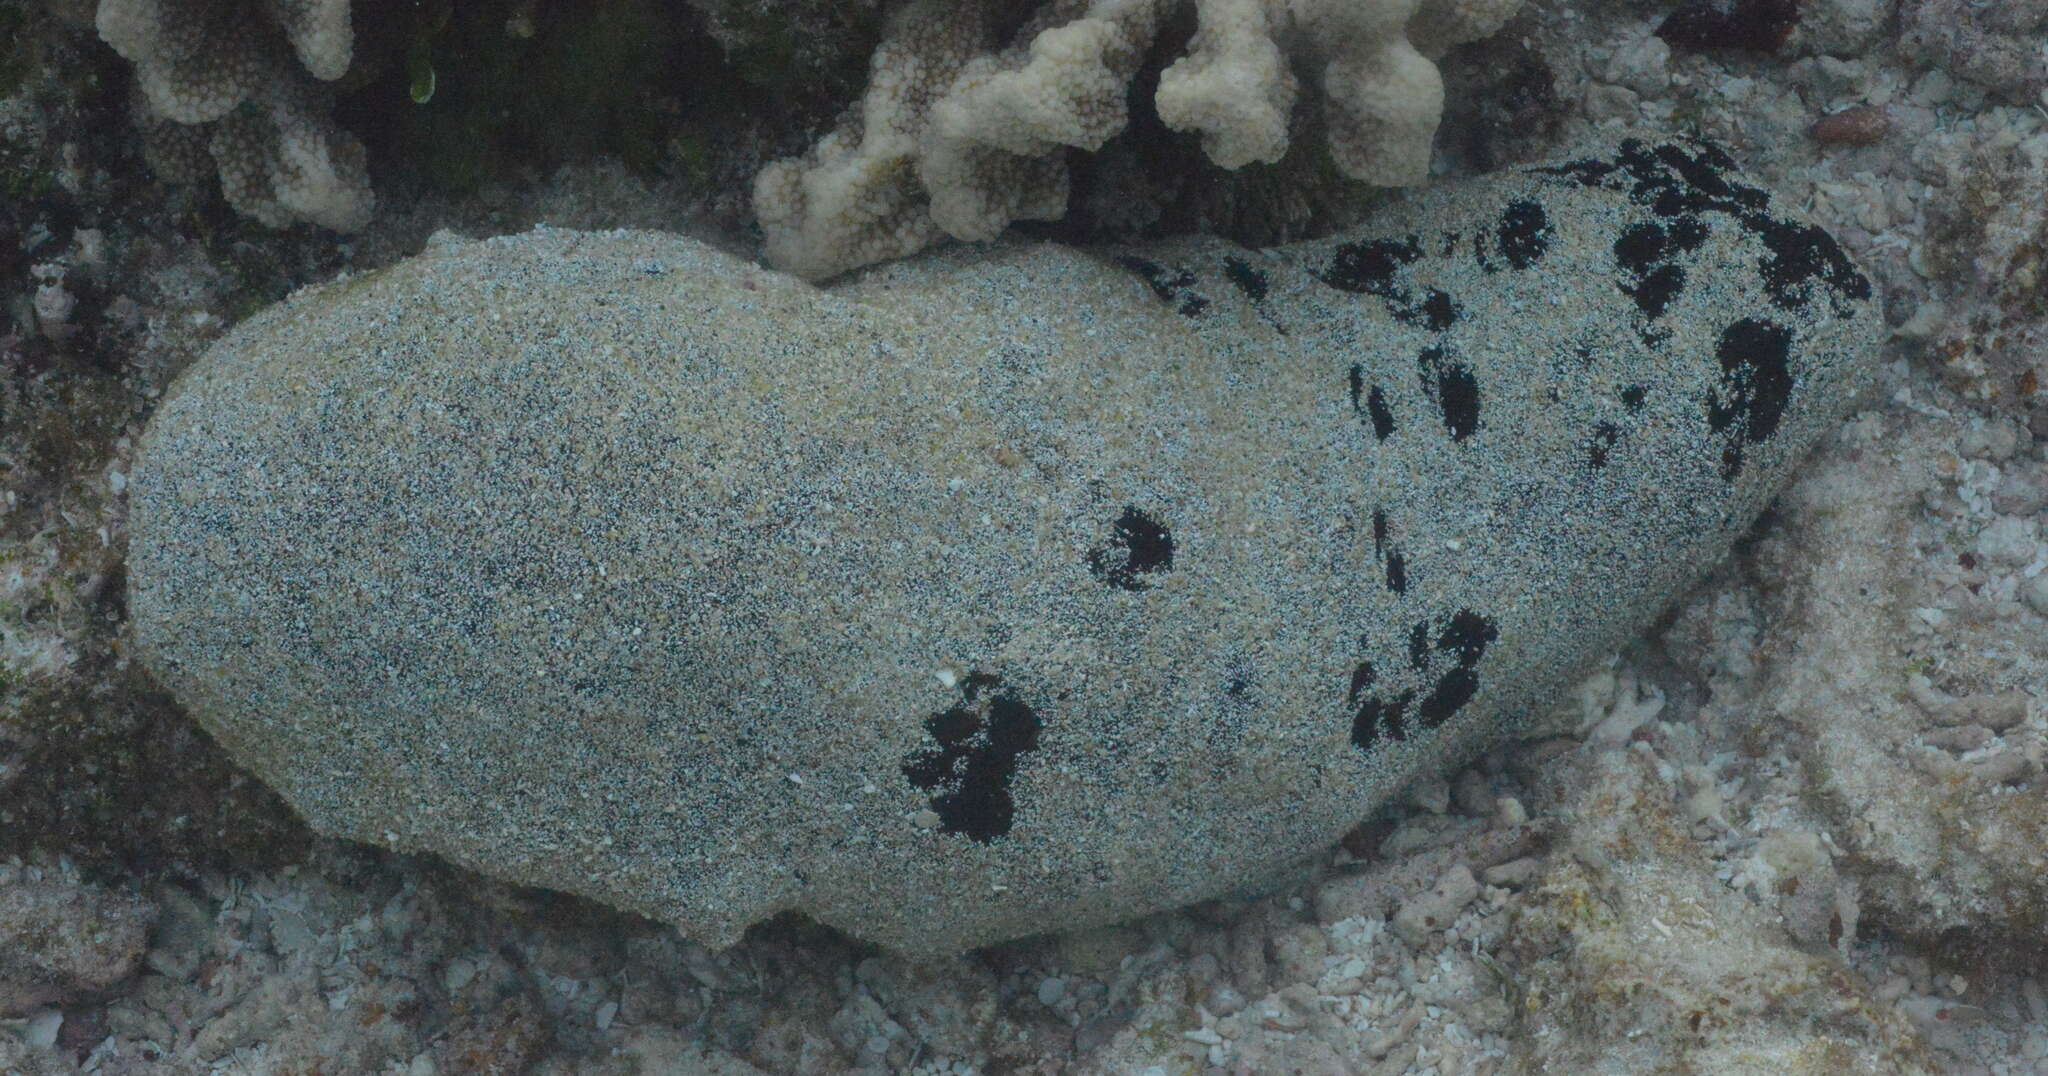 Image of Black Teatfish